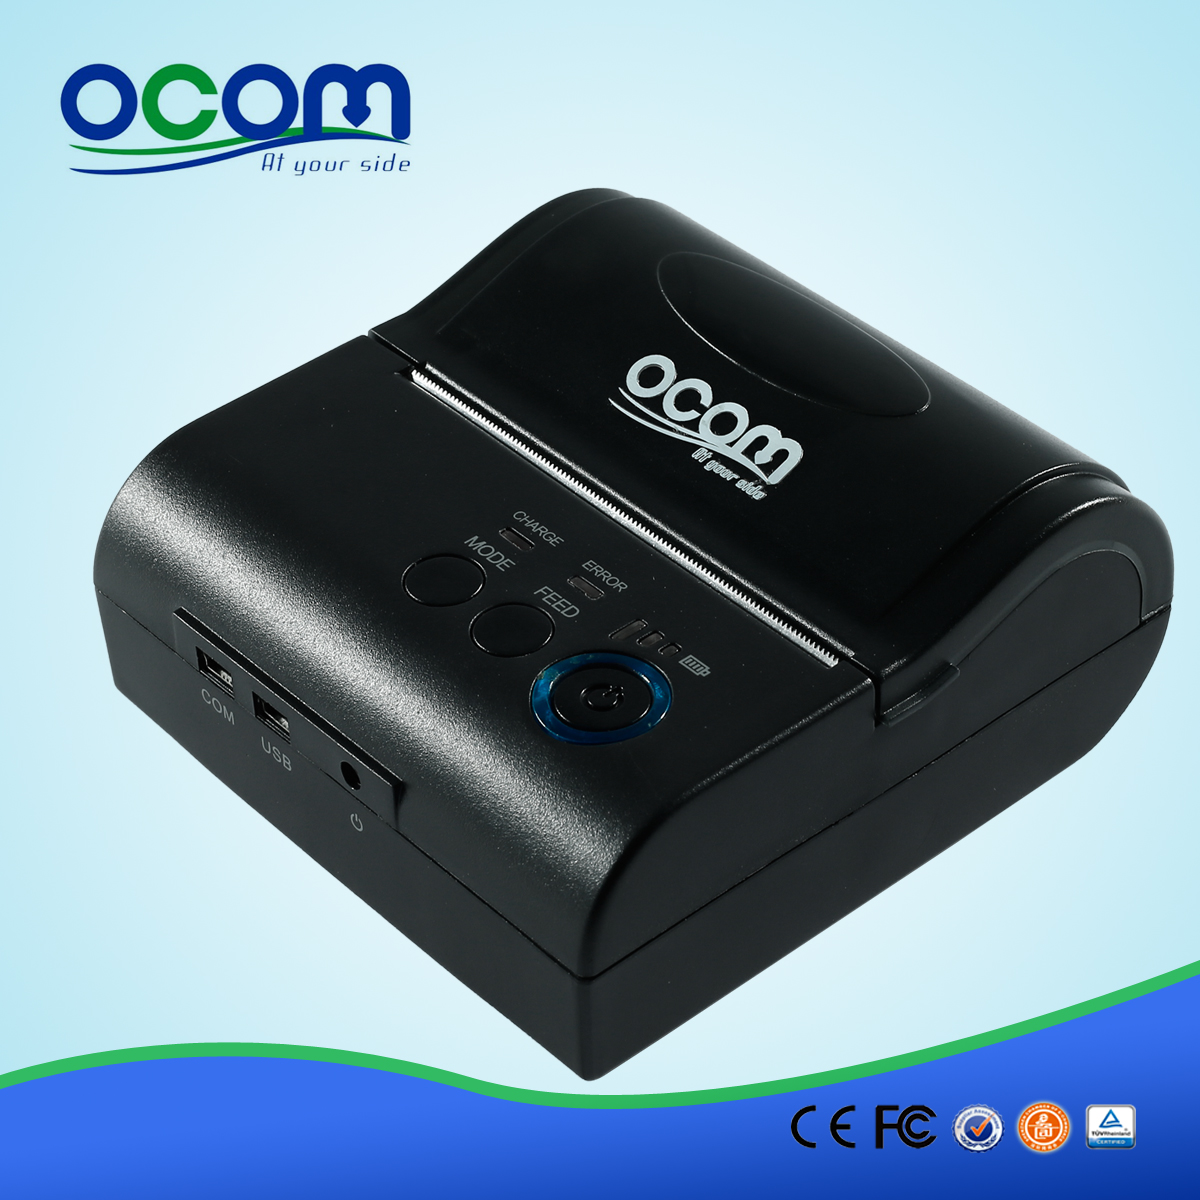 OCPP-M082: Taxi imprimir um recibo com a aparência elegante de 80 milímetros impressora térmica Bluetooth